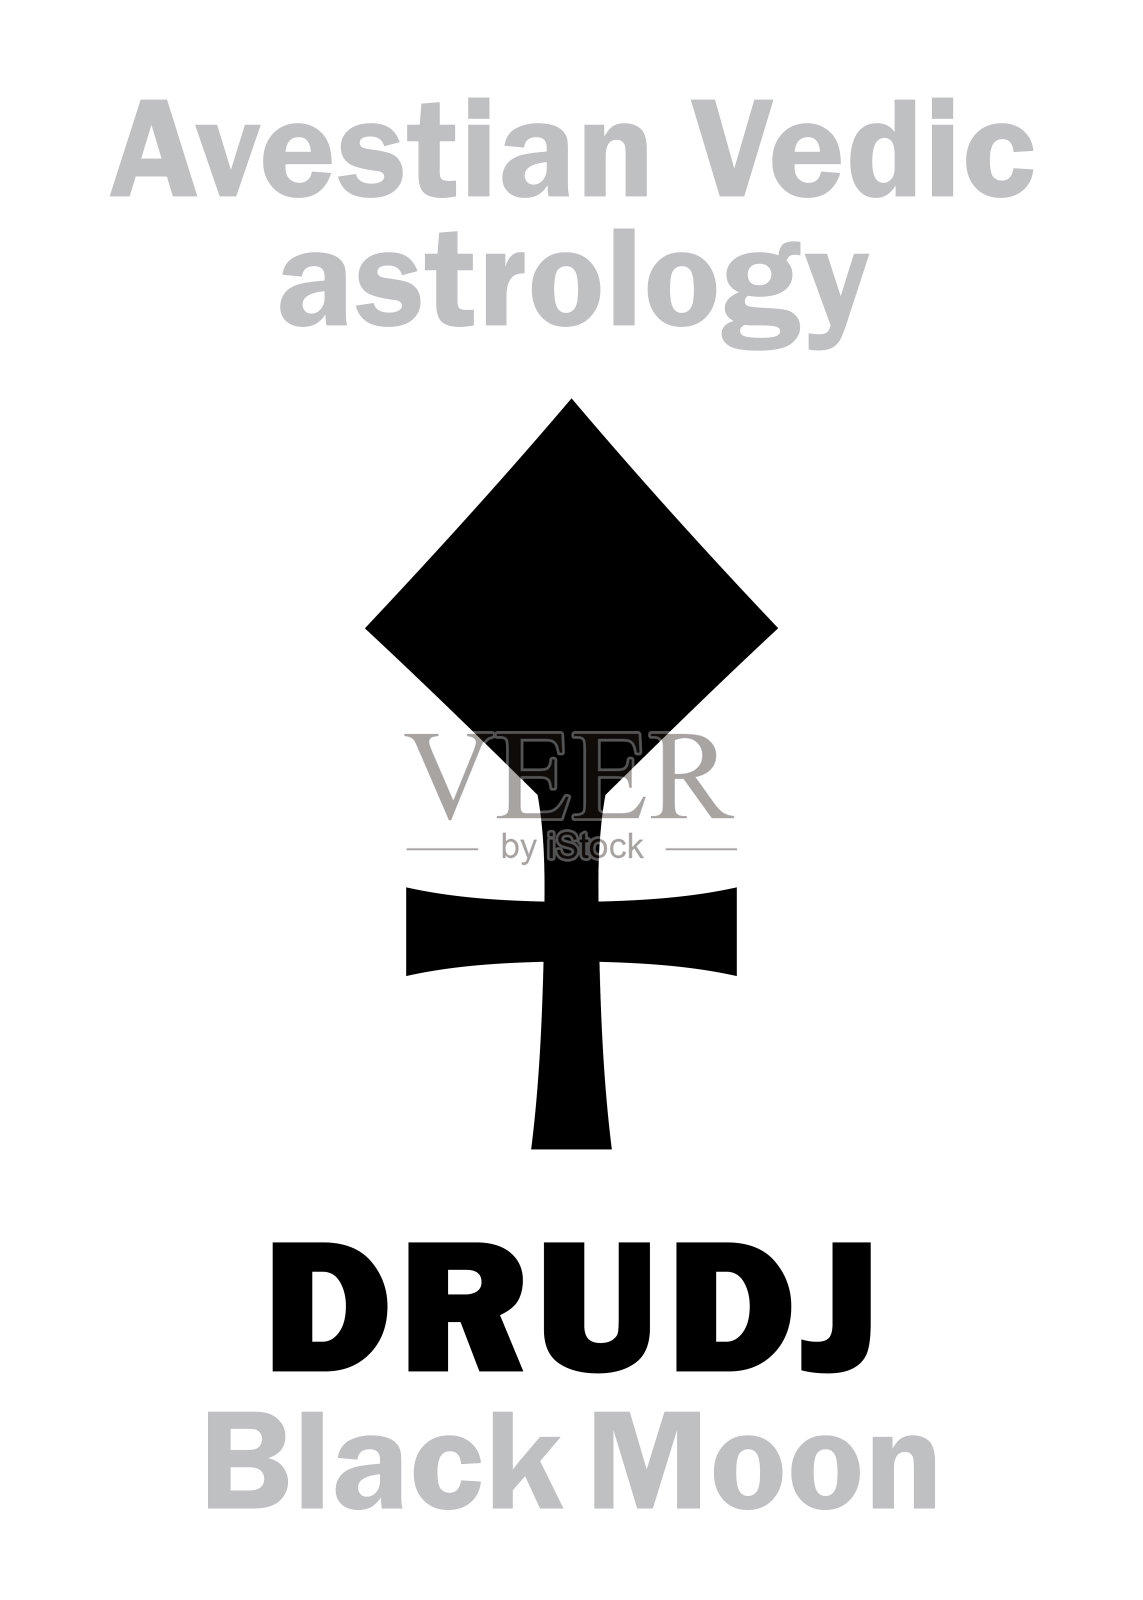 占星字母表:DRUDJ(黑月亮)，阿维斯提吠陀星月。象形文字符号(单符号)。插画图片素材